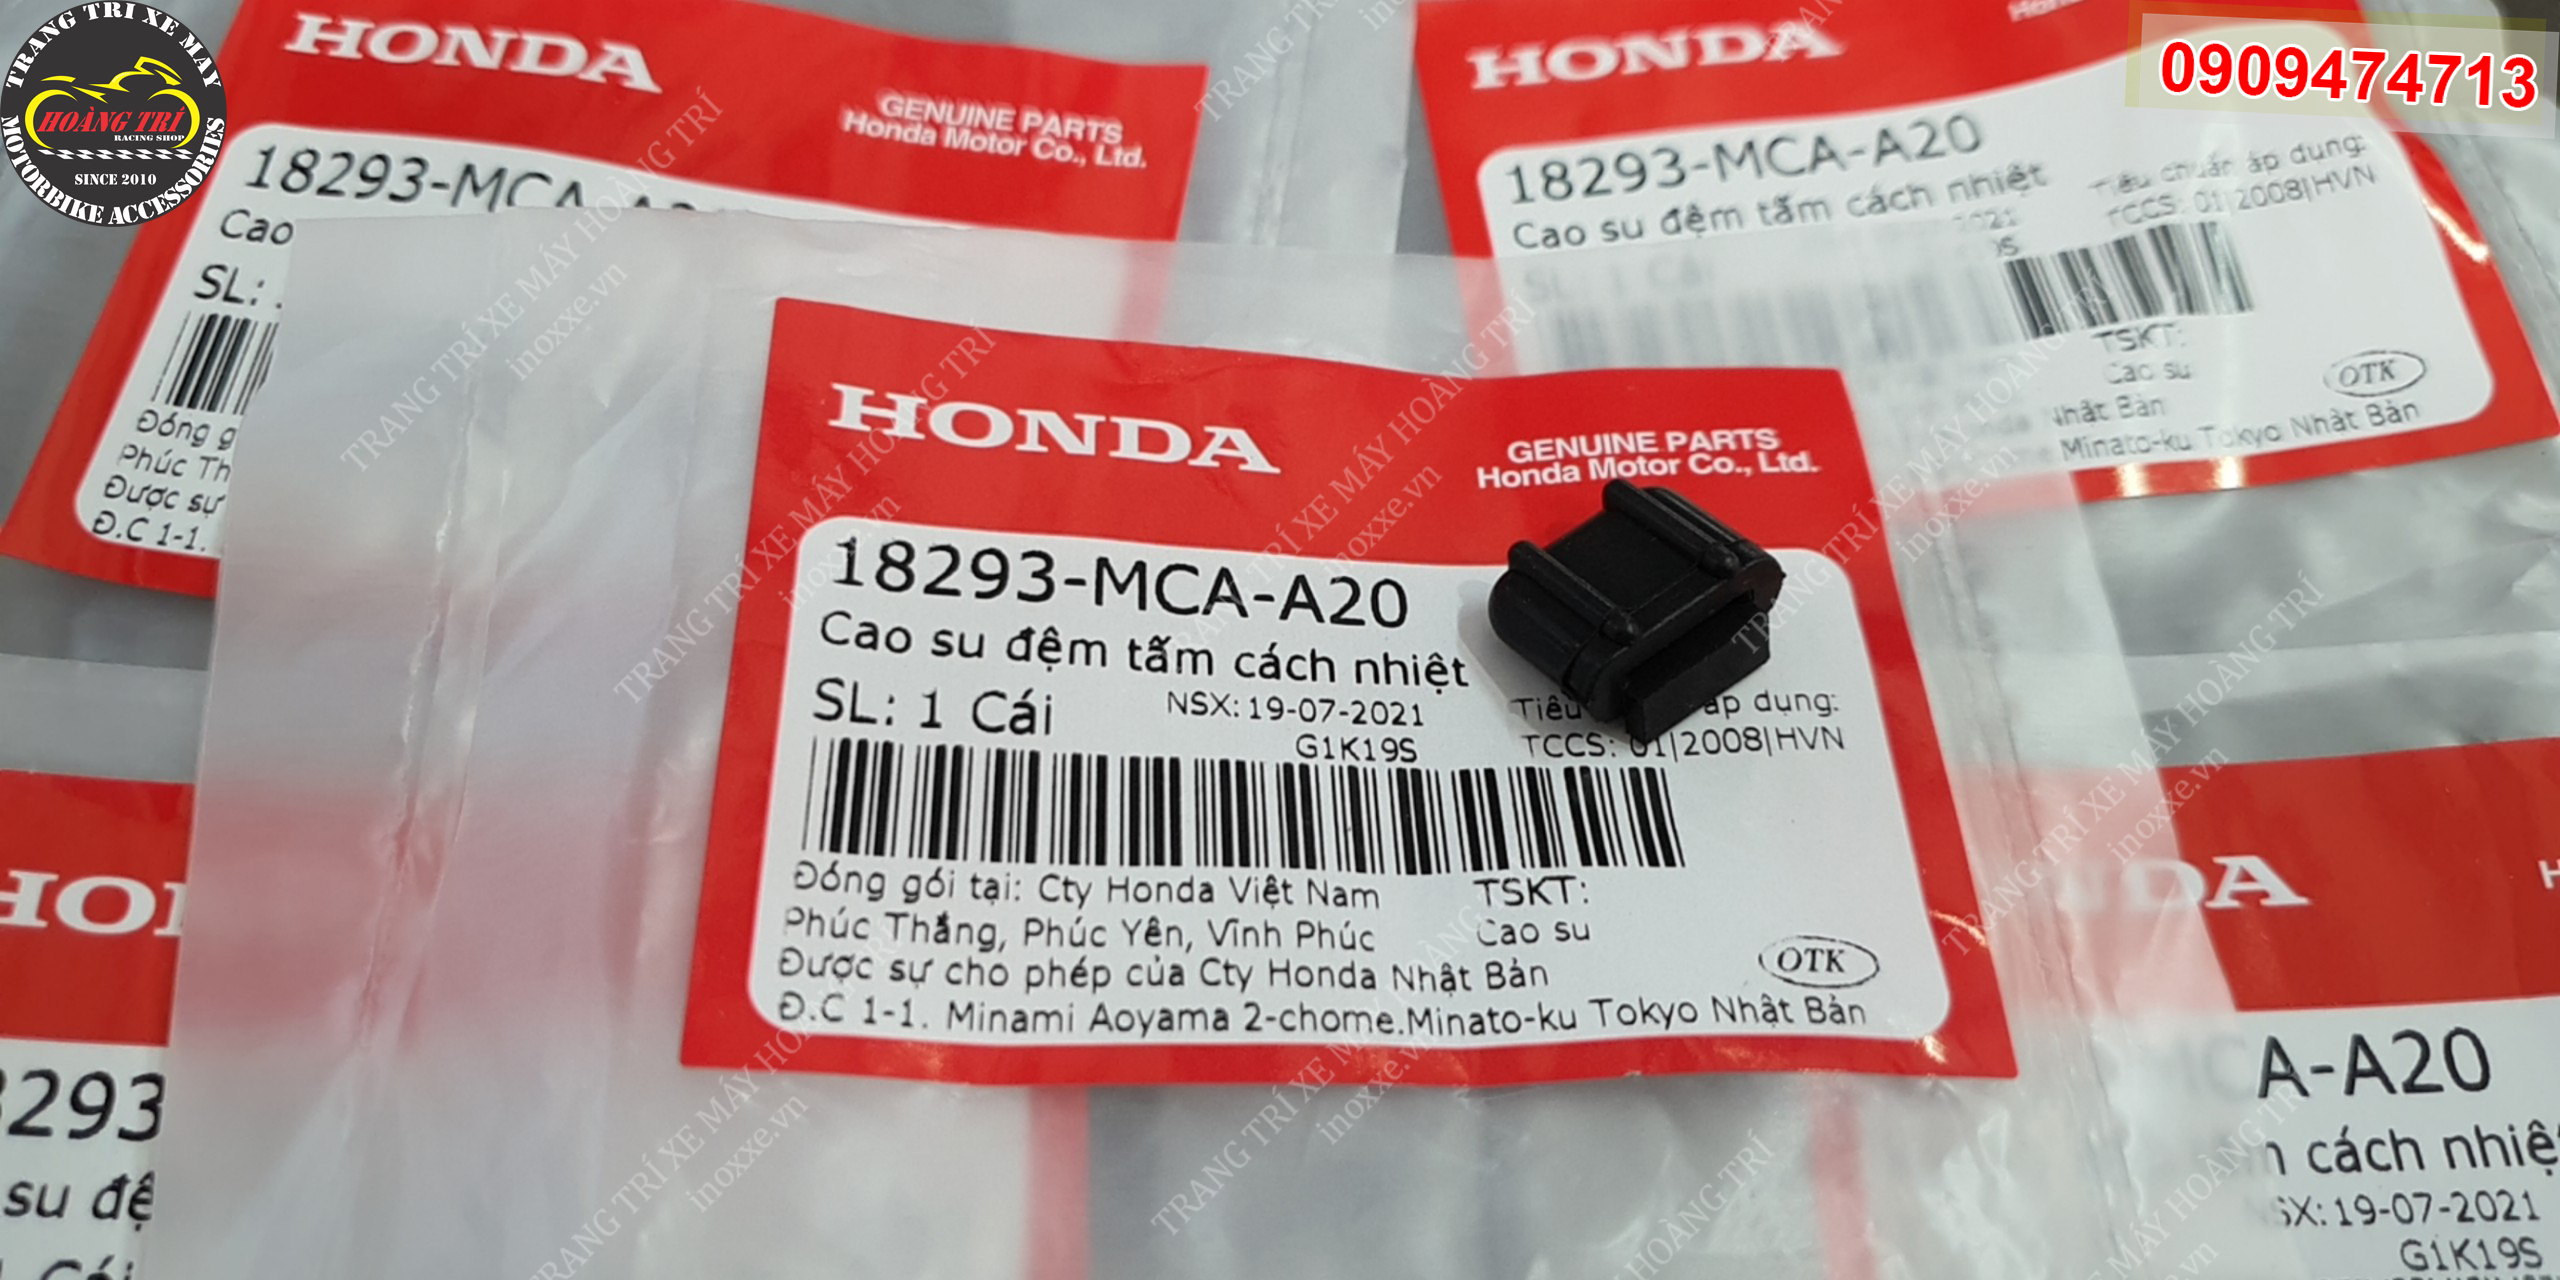 Cao su đệm tấm cách nhiệt chính hãng Honda